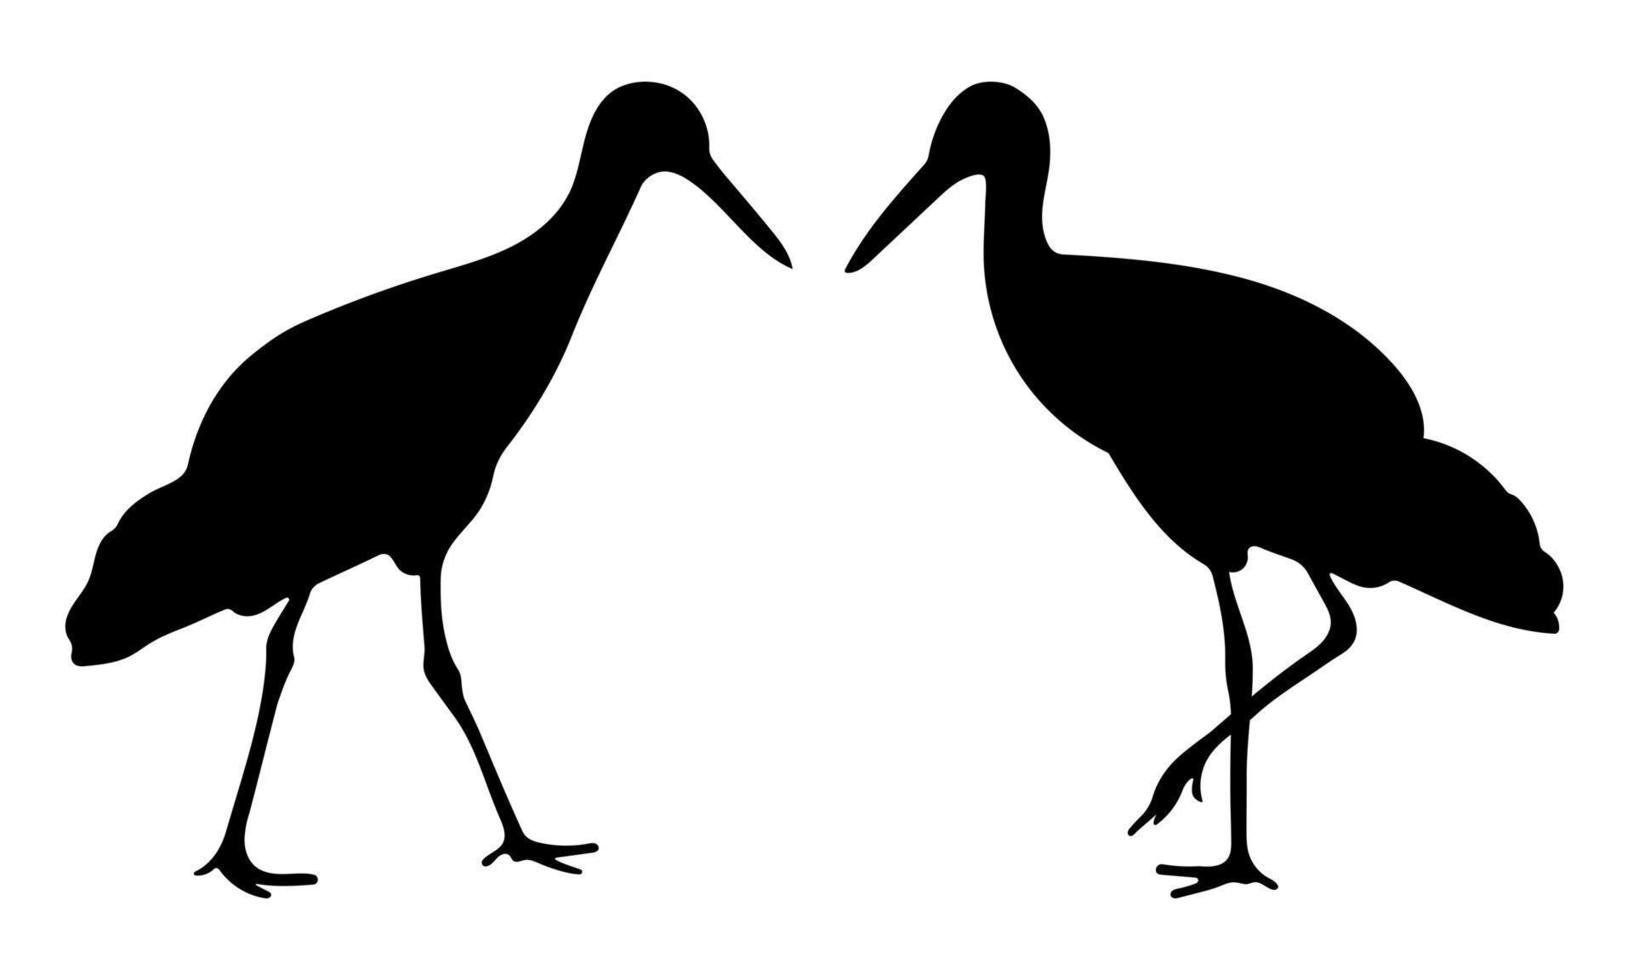 forma de cigüeña de pájaro, silueta negra de una cigüeña, animal salvaje vector